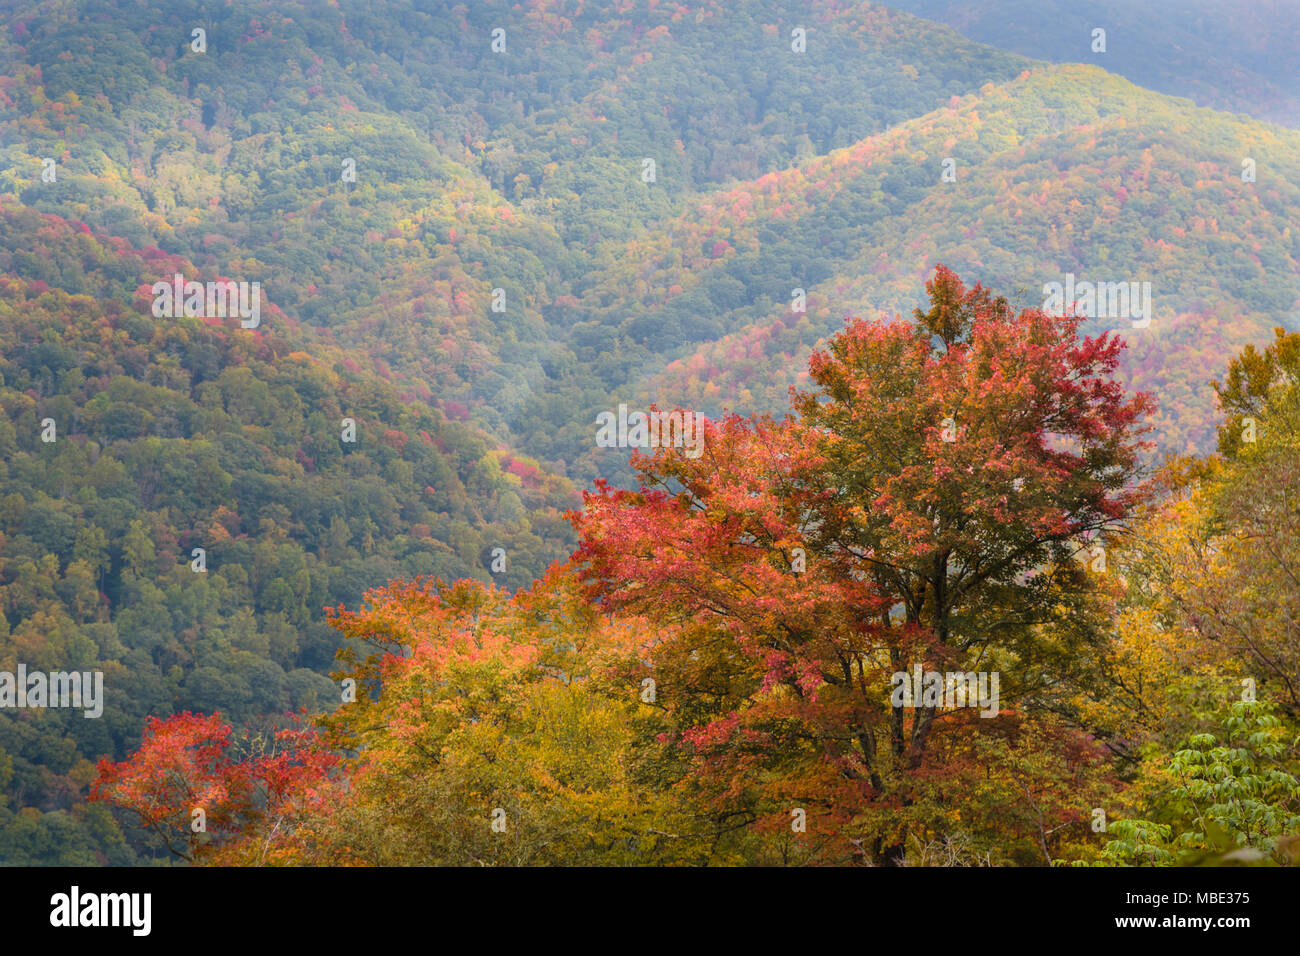 North Carolina, Stati Uniti d'America. Scenario autunnale nel Parco Nazionale di Great Smoky Mountains. UNESCO - Sito Patrimonio dell'umanità. Foto Stock